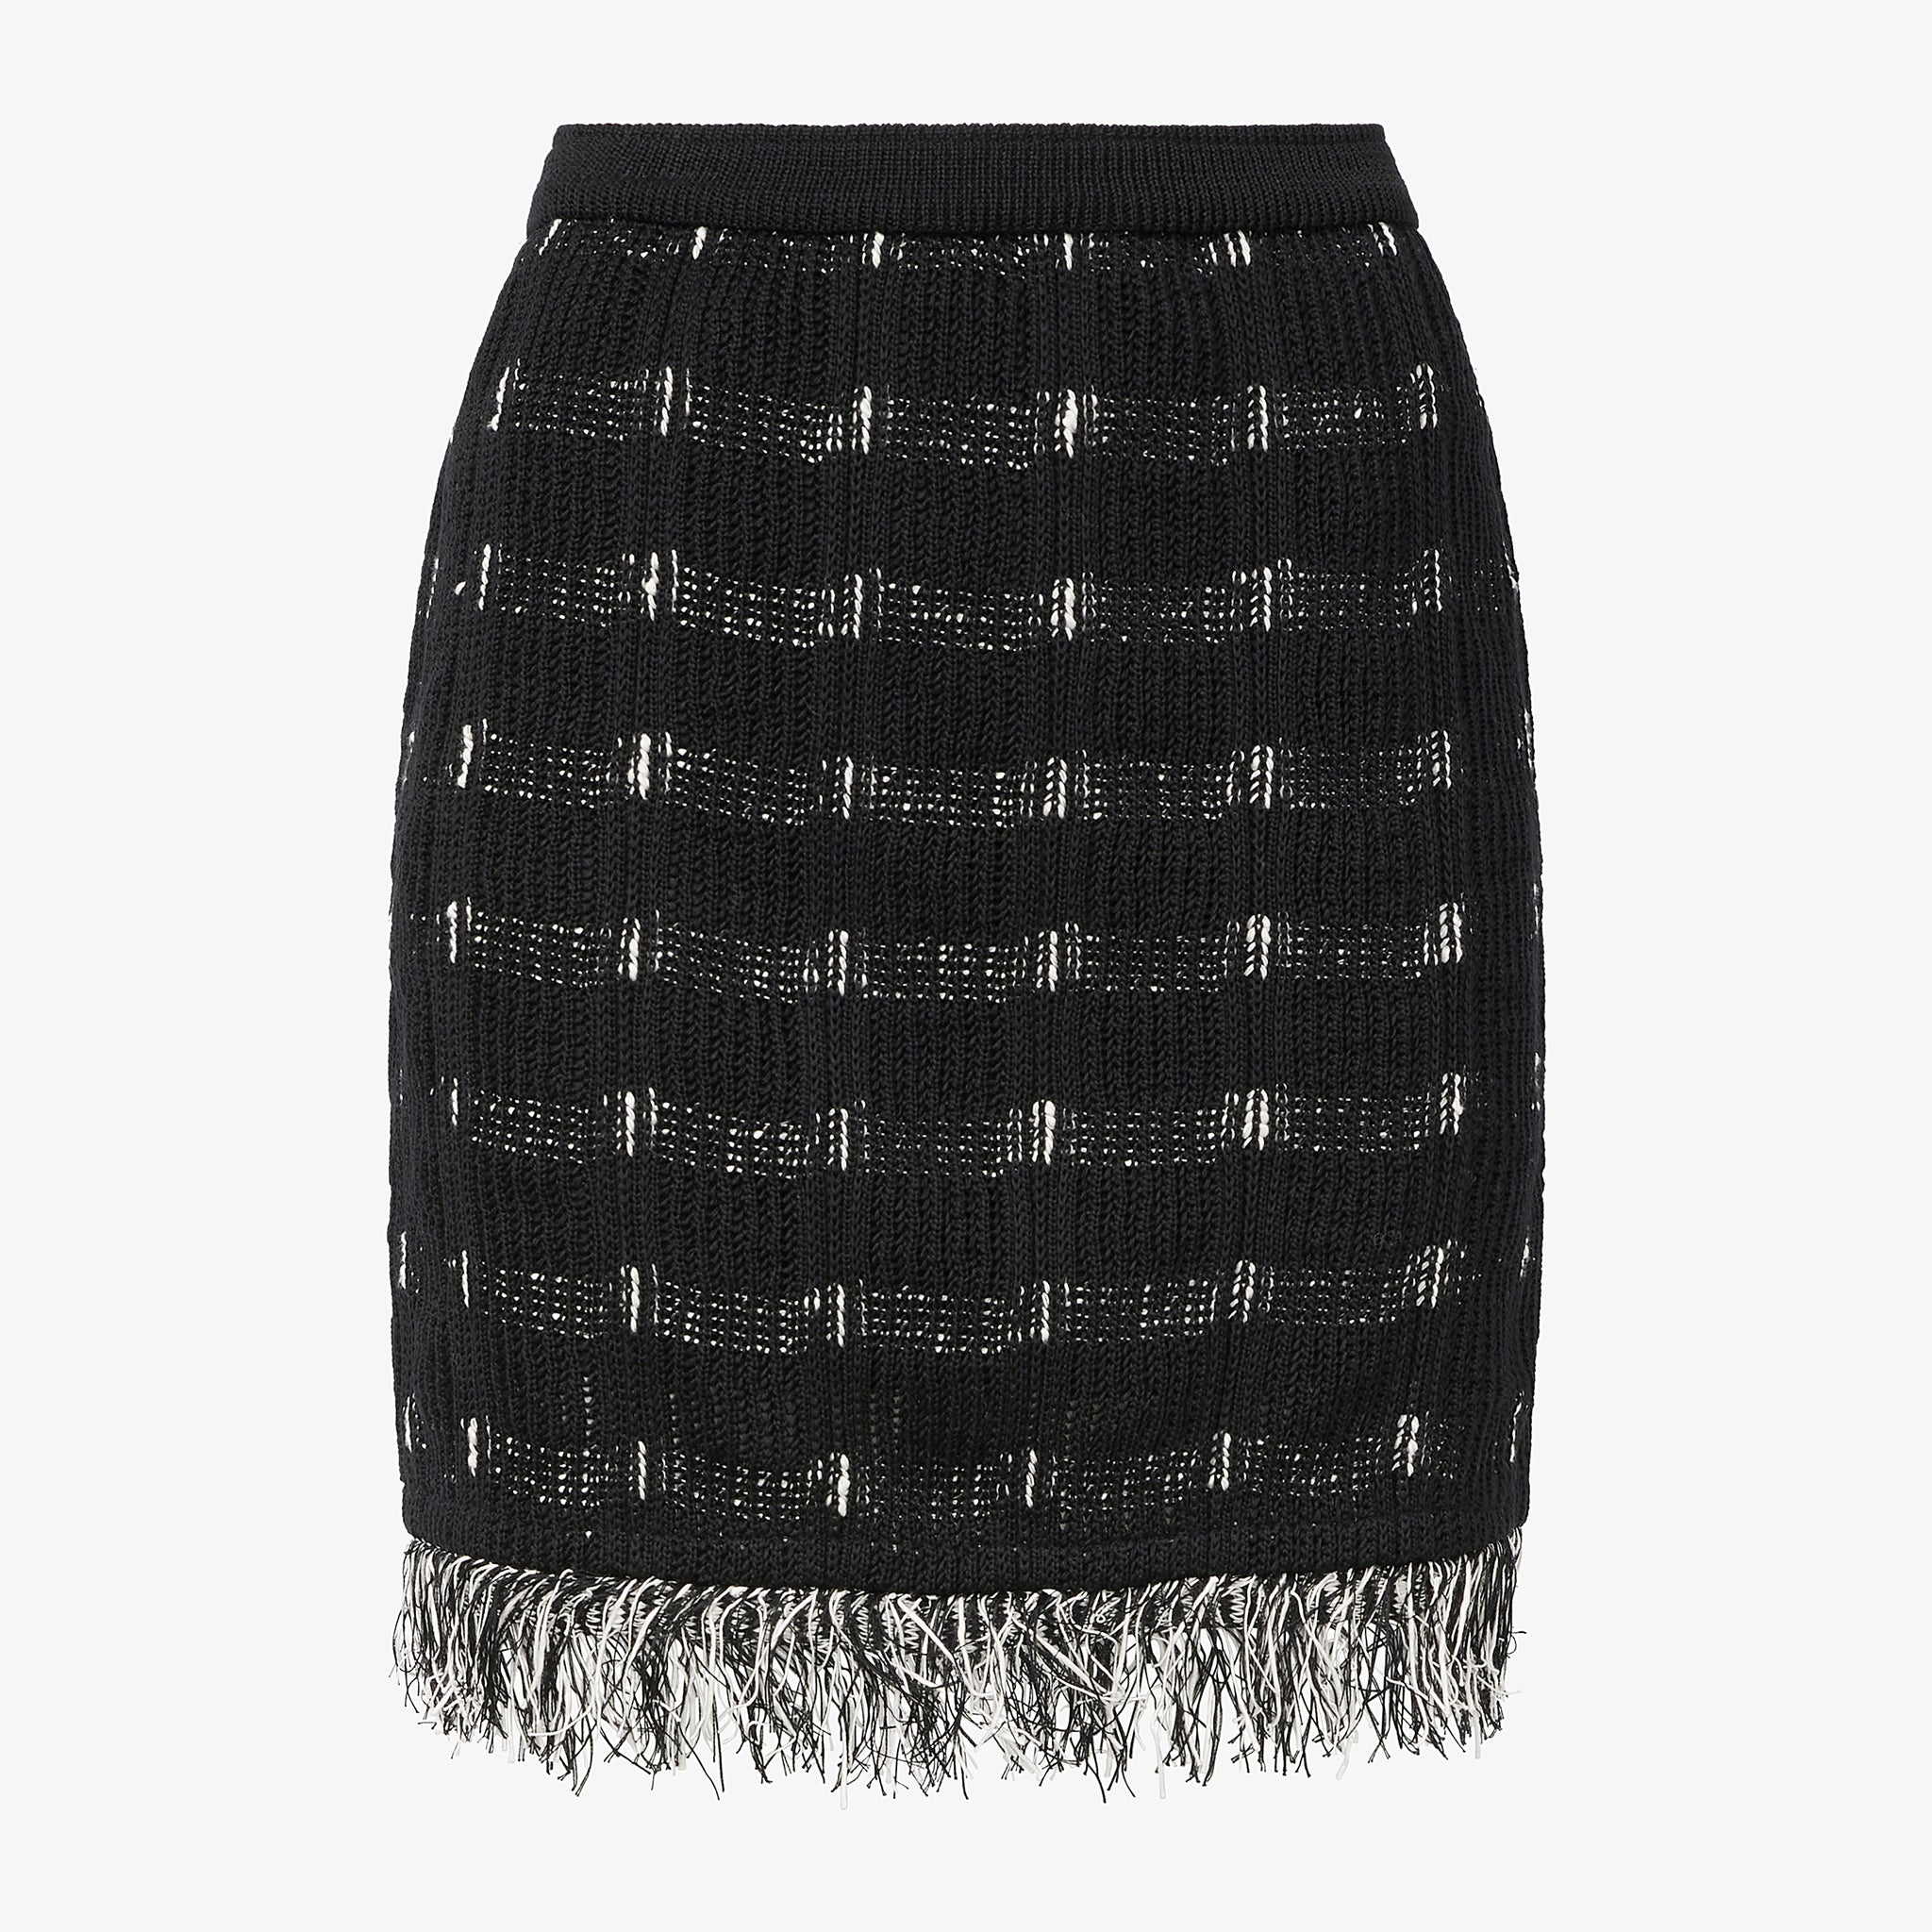 Packshot image of the Krista Skirt - Linear Interweave in Black / White